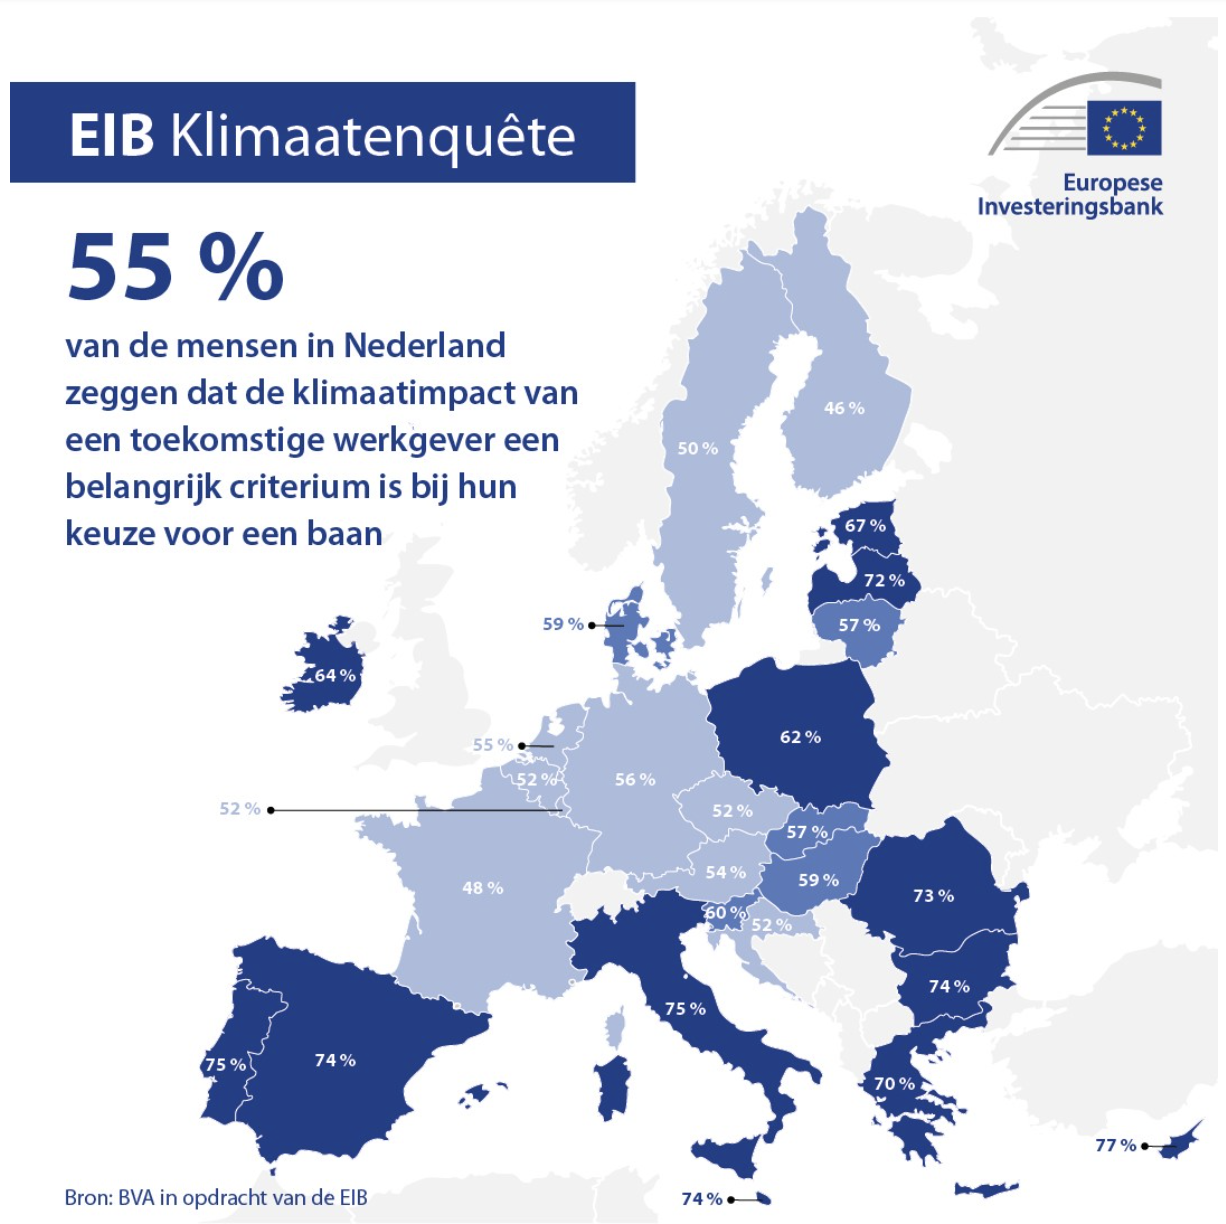 Belang van klimaatimpact toekomstige werkgever, bron: EIB Klimaatenquête 